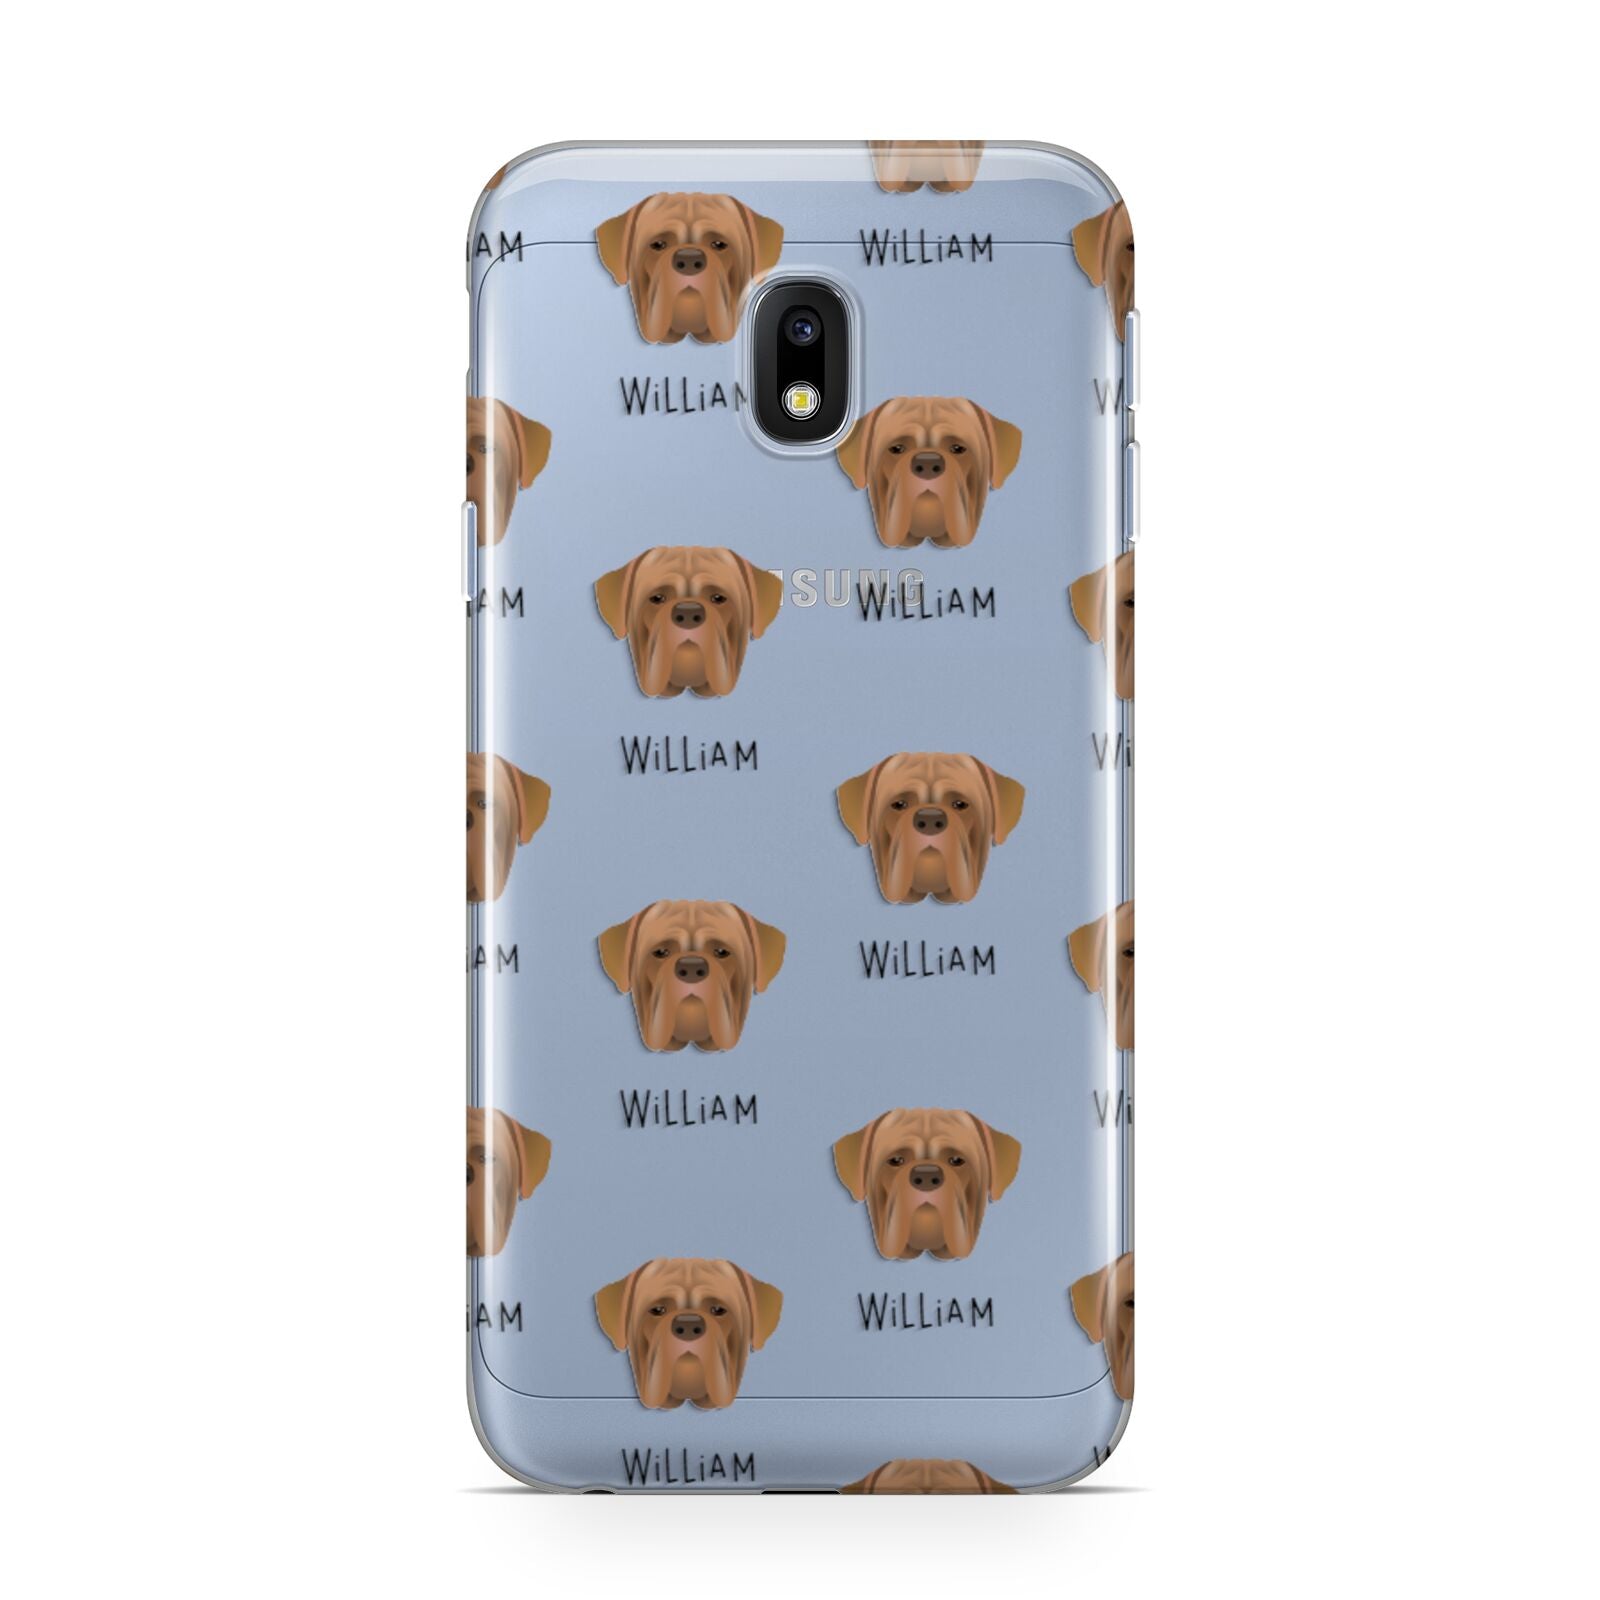 Dogue de Bordeaux Icon with Name Samsung Galaxy J3 2017 Case